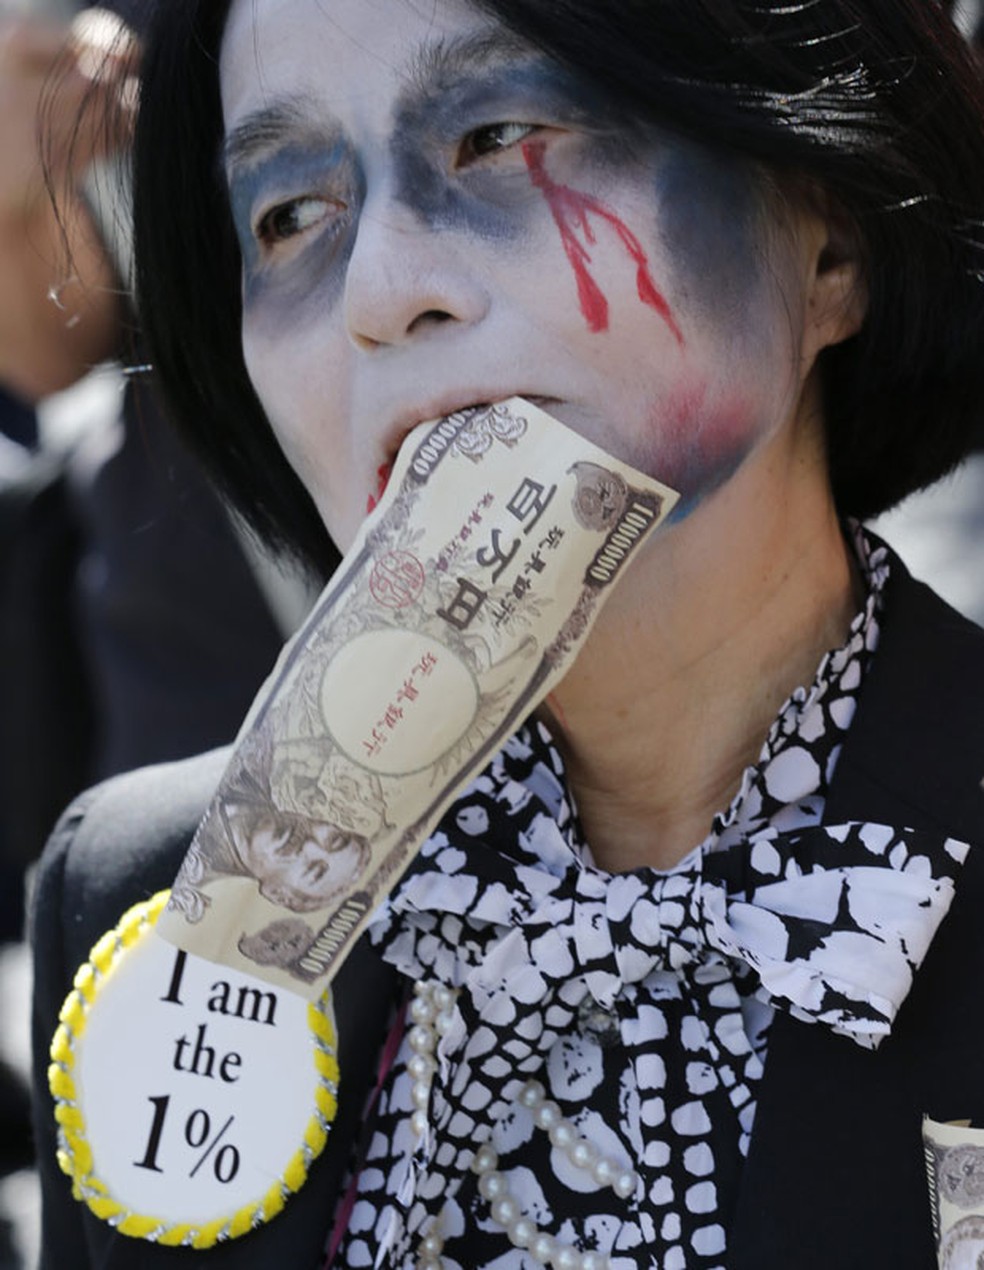 Imagem de 2016 mostra manifestantes contra o plano do governo japonês de voltar a usar energia nuclear após a crise de Fukushima em 2011. O protesto ocorre um dia após a empresa responsável pela usina nuclear admitir que minimizou os riscos de um acidente — Foto: Kim Kyung-Hoon/Reuters